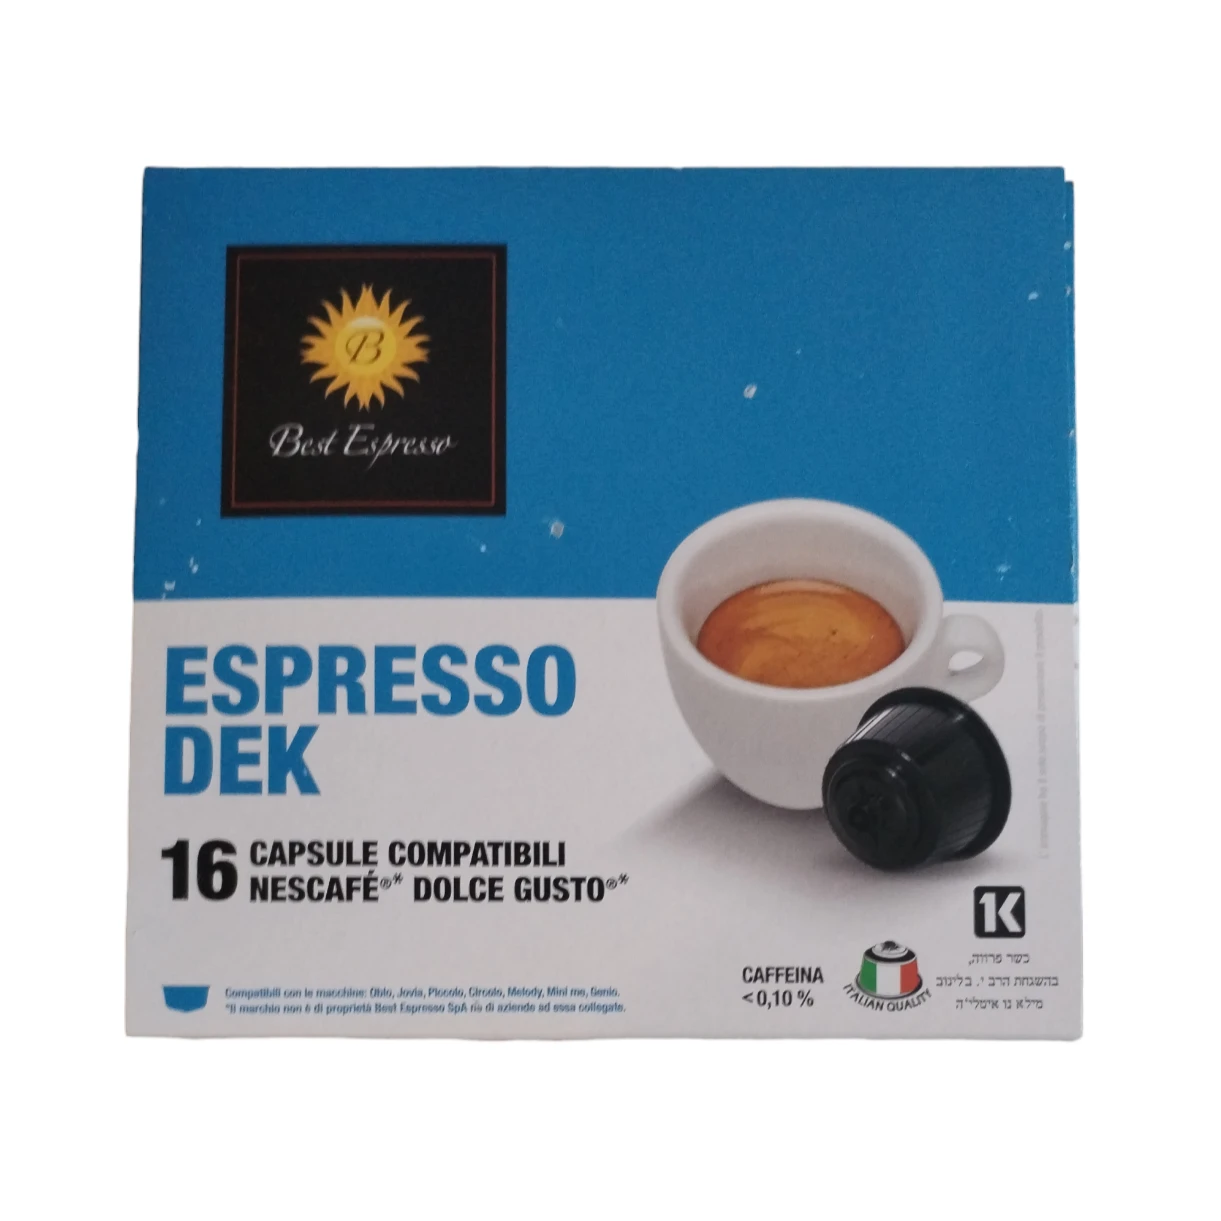 1559-espressodekaffdolcegusto-17066123843863.png